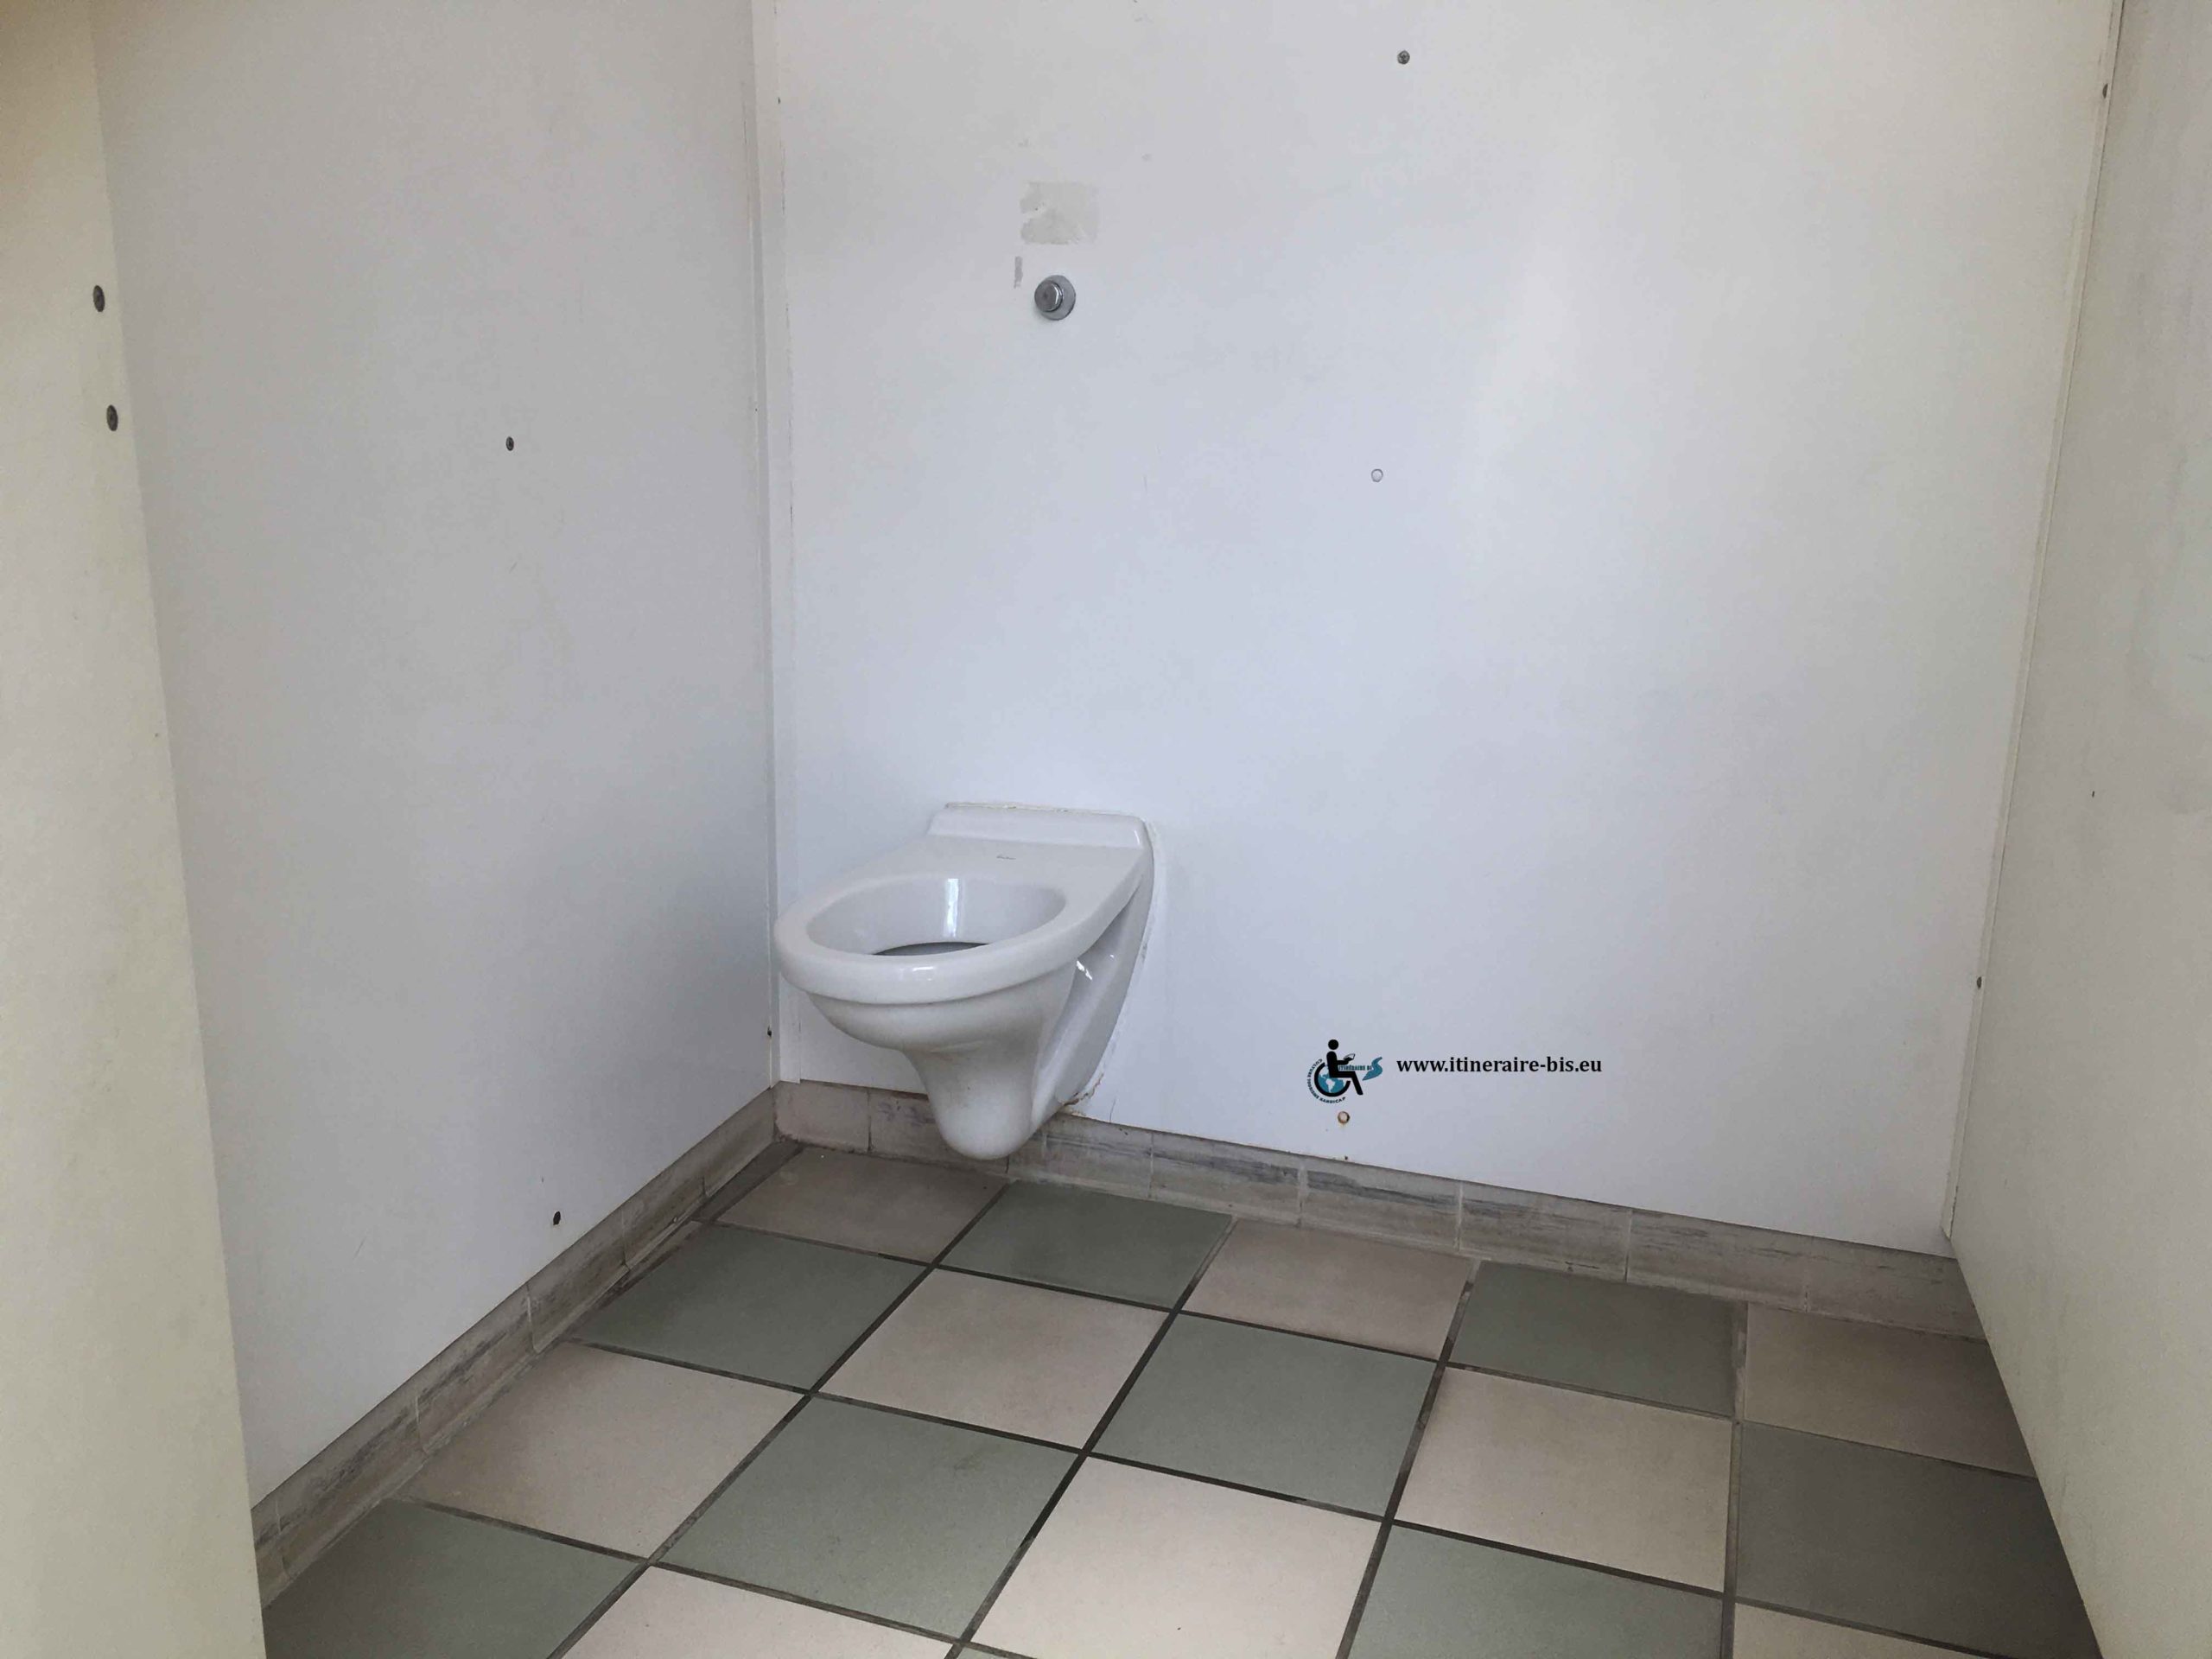 Aucun aménagment dans ces toilettes pour faciliter l'accés des personnes handicapées.